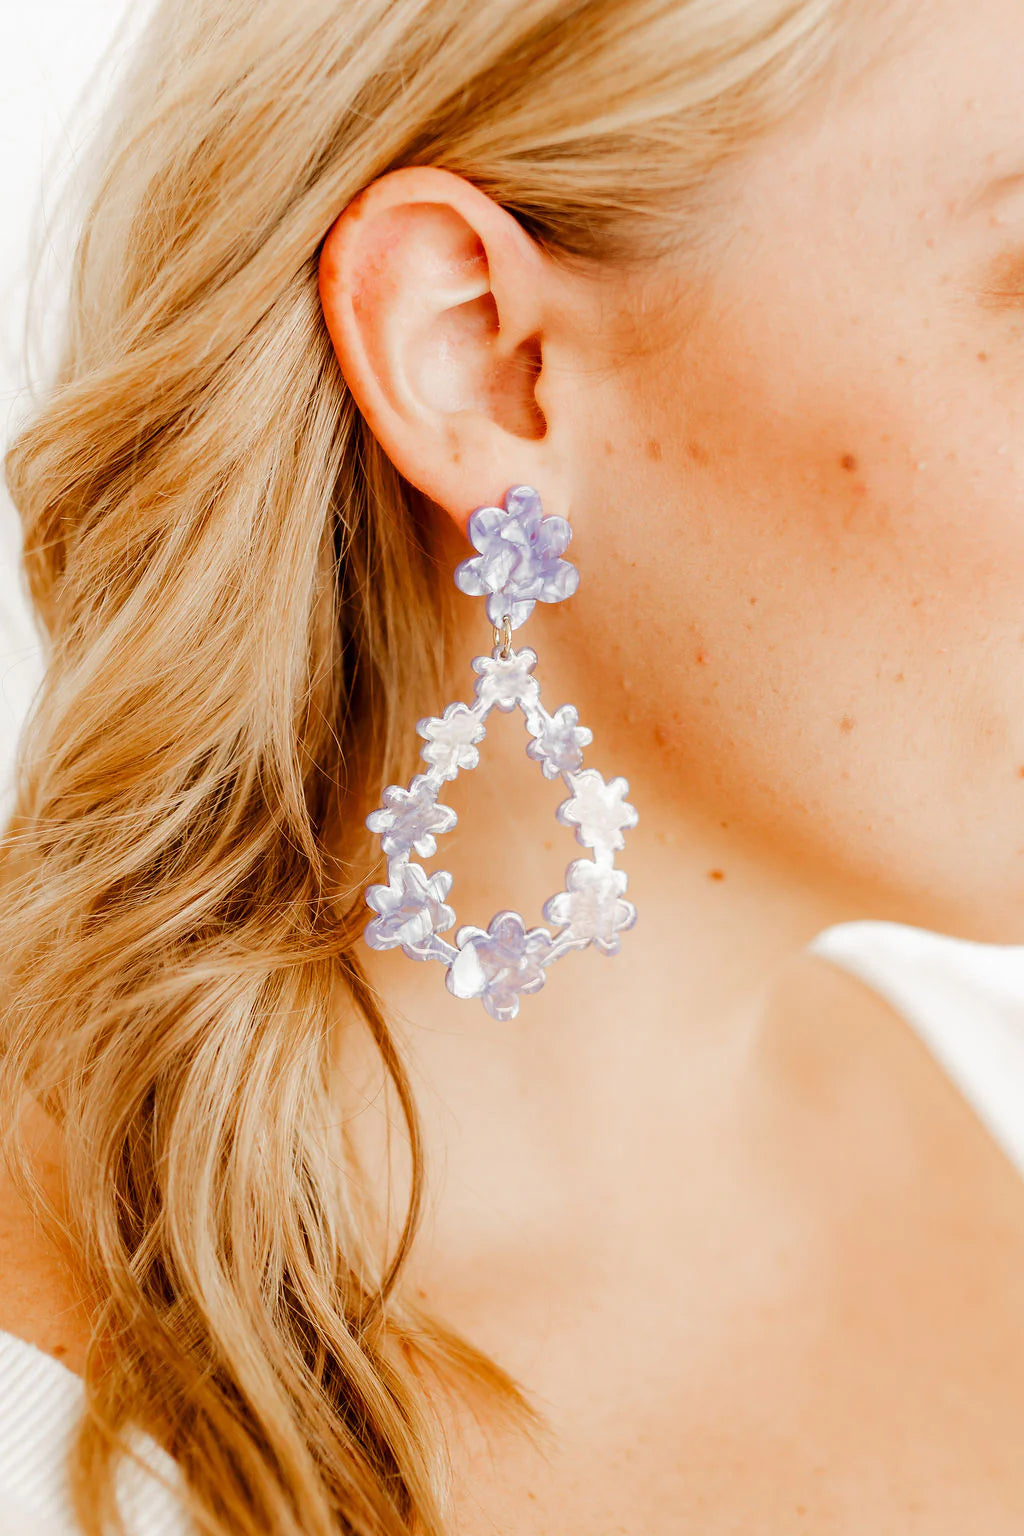 Bianca- Periwinkle Earrings